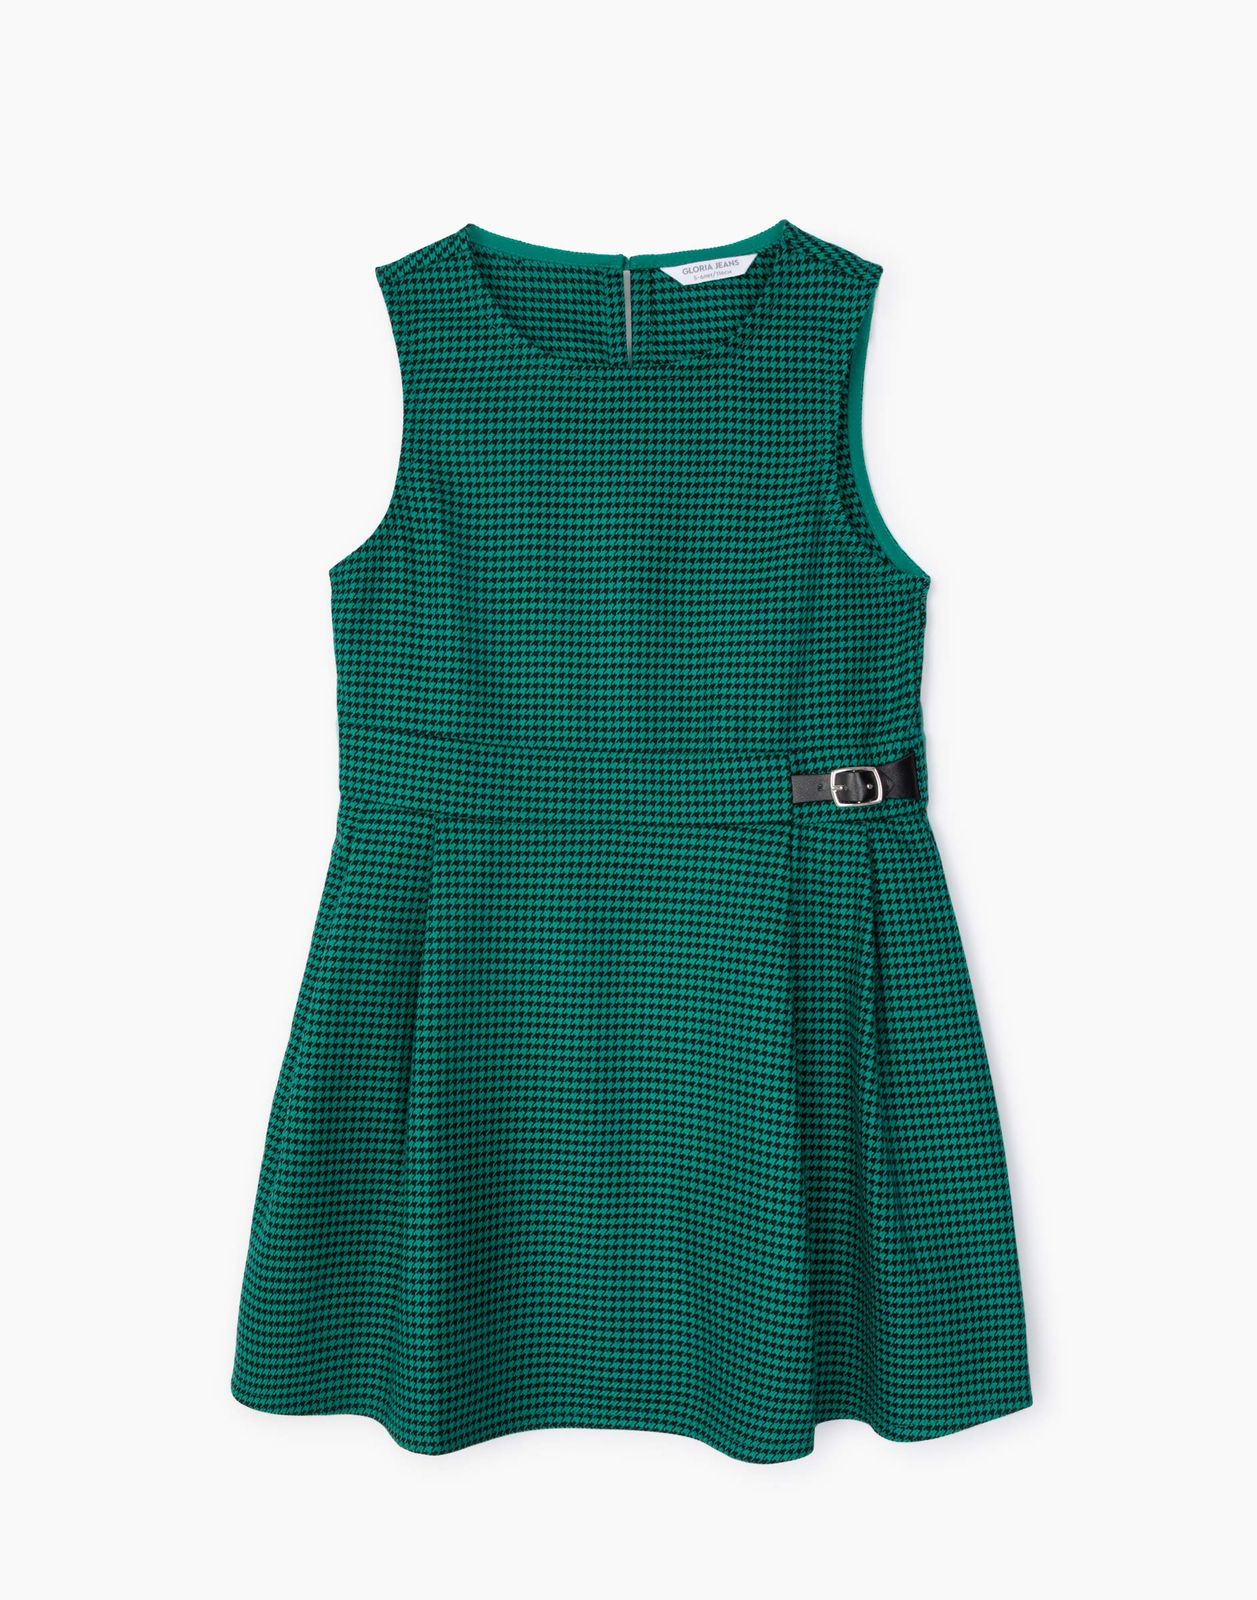 Платье детское Gloria Jeans GDR027840, зеленый/черный, 116